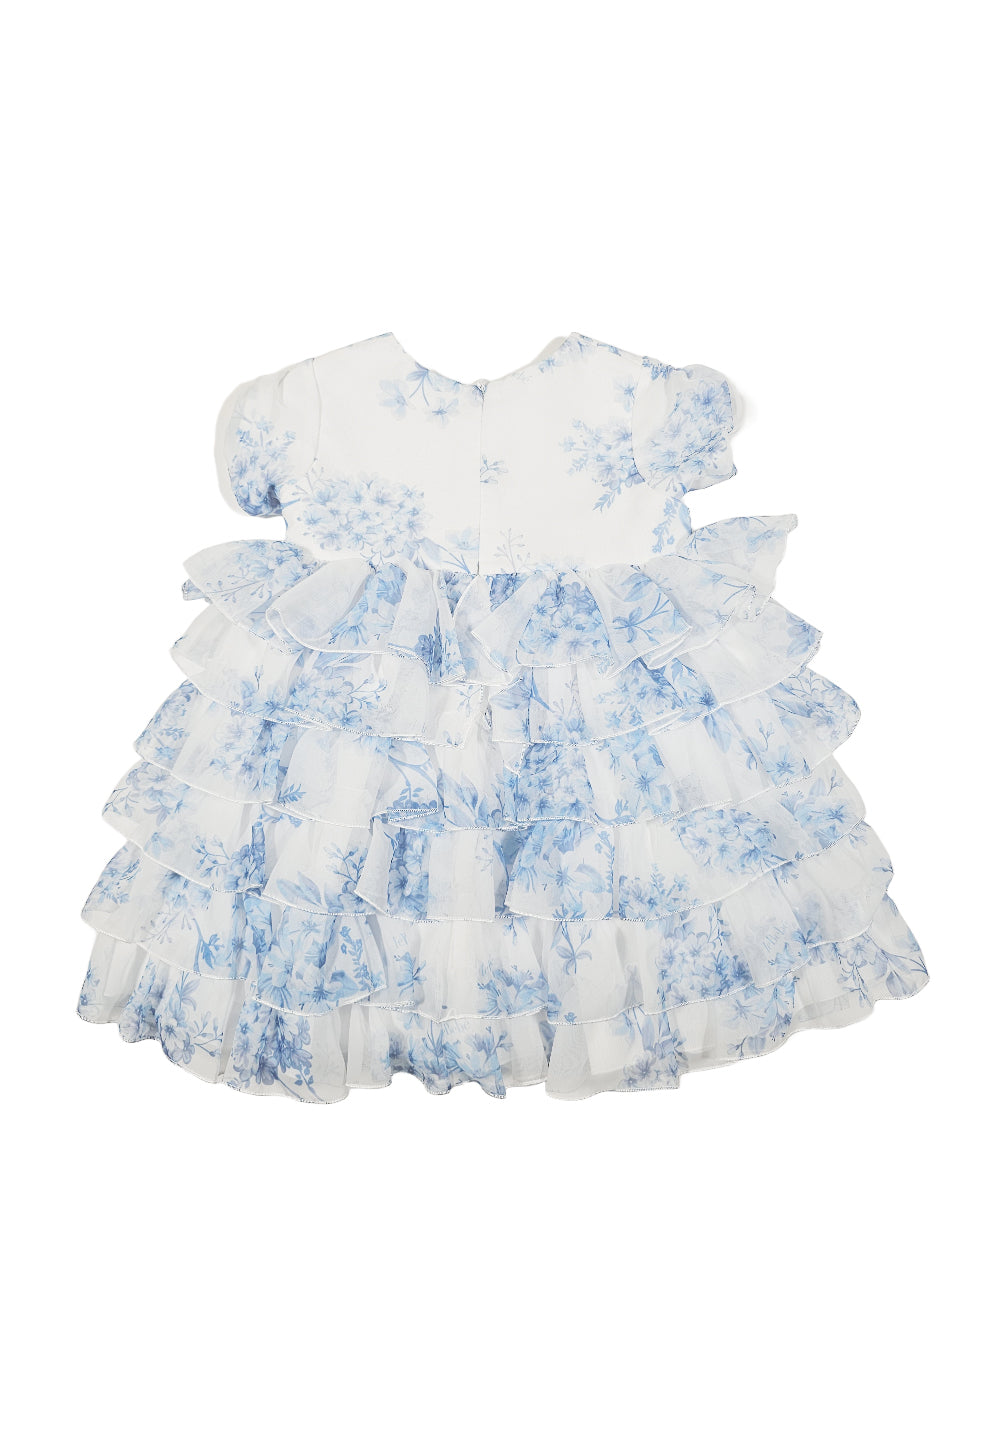 Weiß-hellblaues Kleid für neugeborene Mädchen